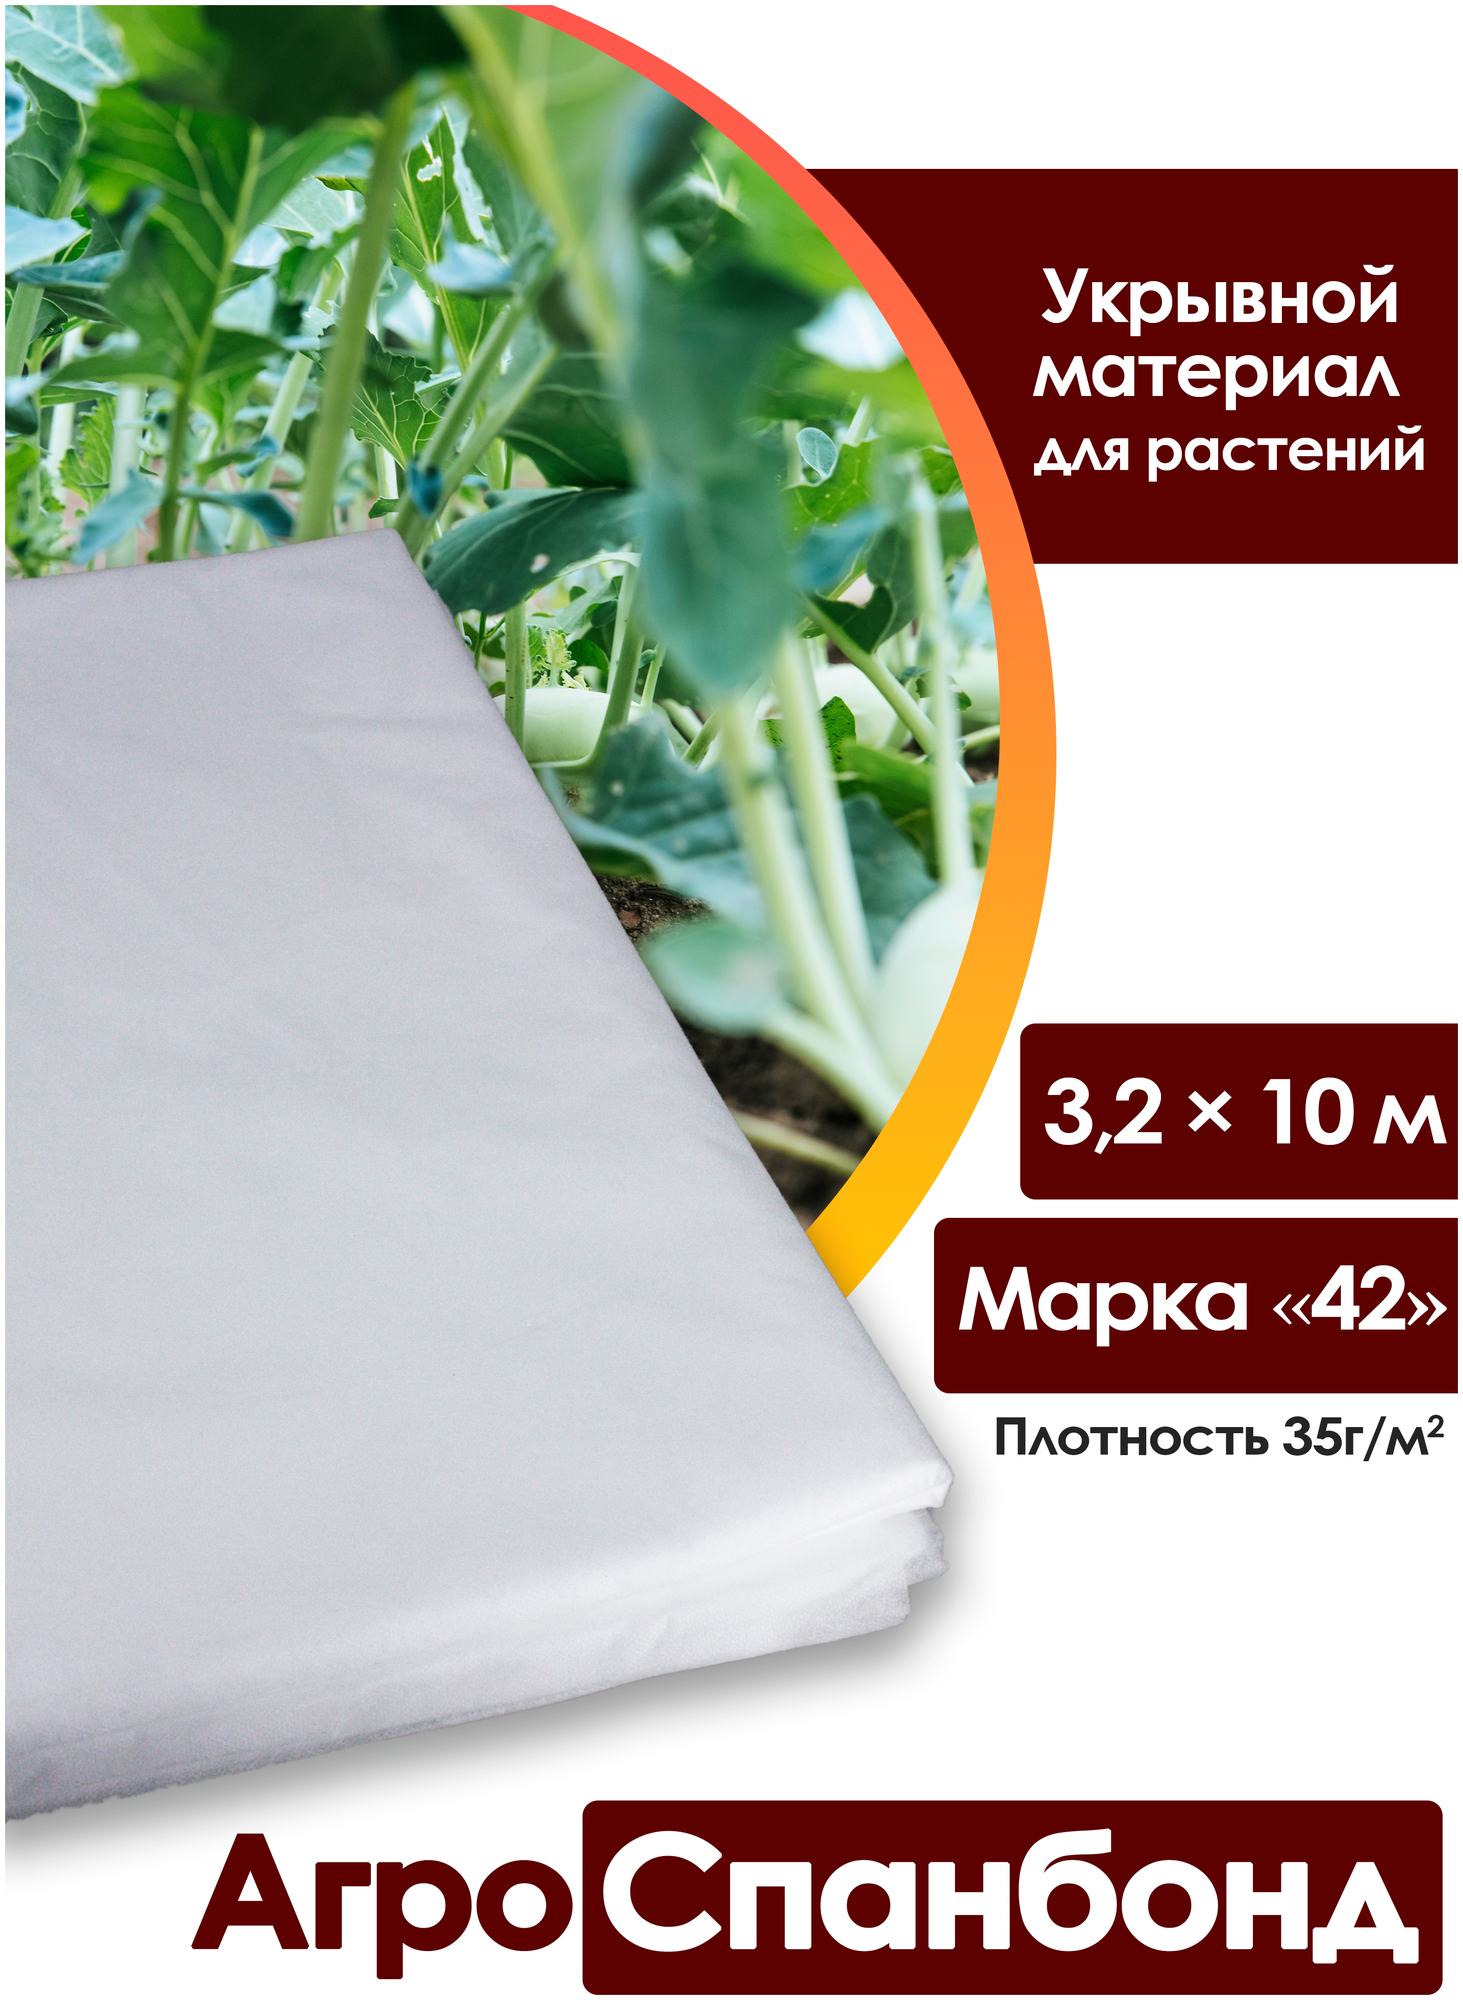 Body Pillow Спанбонд укрывной 3,2х10 м плотностью 35 г/м2, марка "42" / Агротекстиль для теплиц, растений / Нетканый укрывной материал